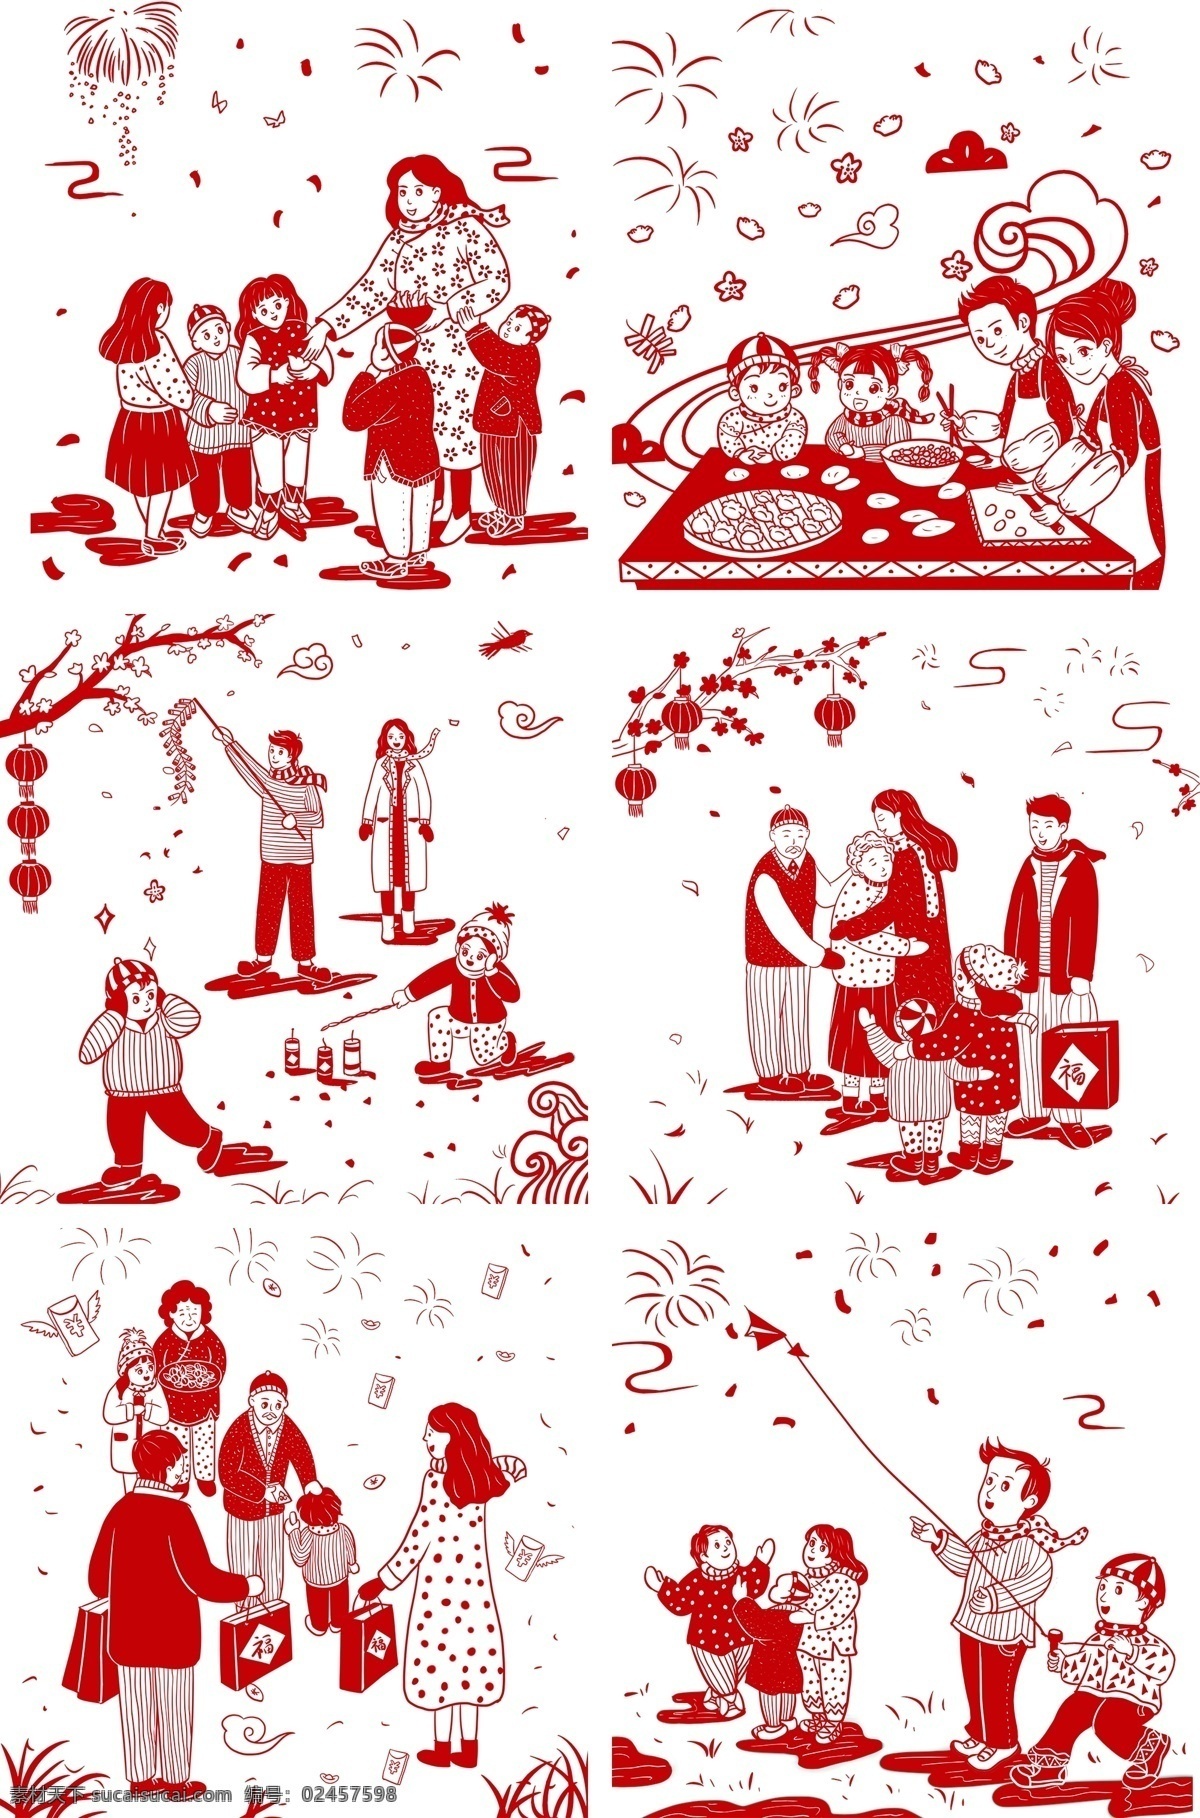 新年 手绘 剪纸 插画 中国 风 传统 中国风 喜庆 红色 幸福 吉祥 快乐 节日 卡通 红包 礼物 高兴